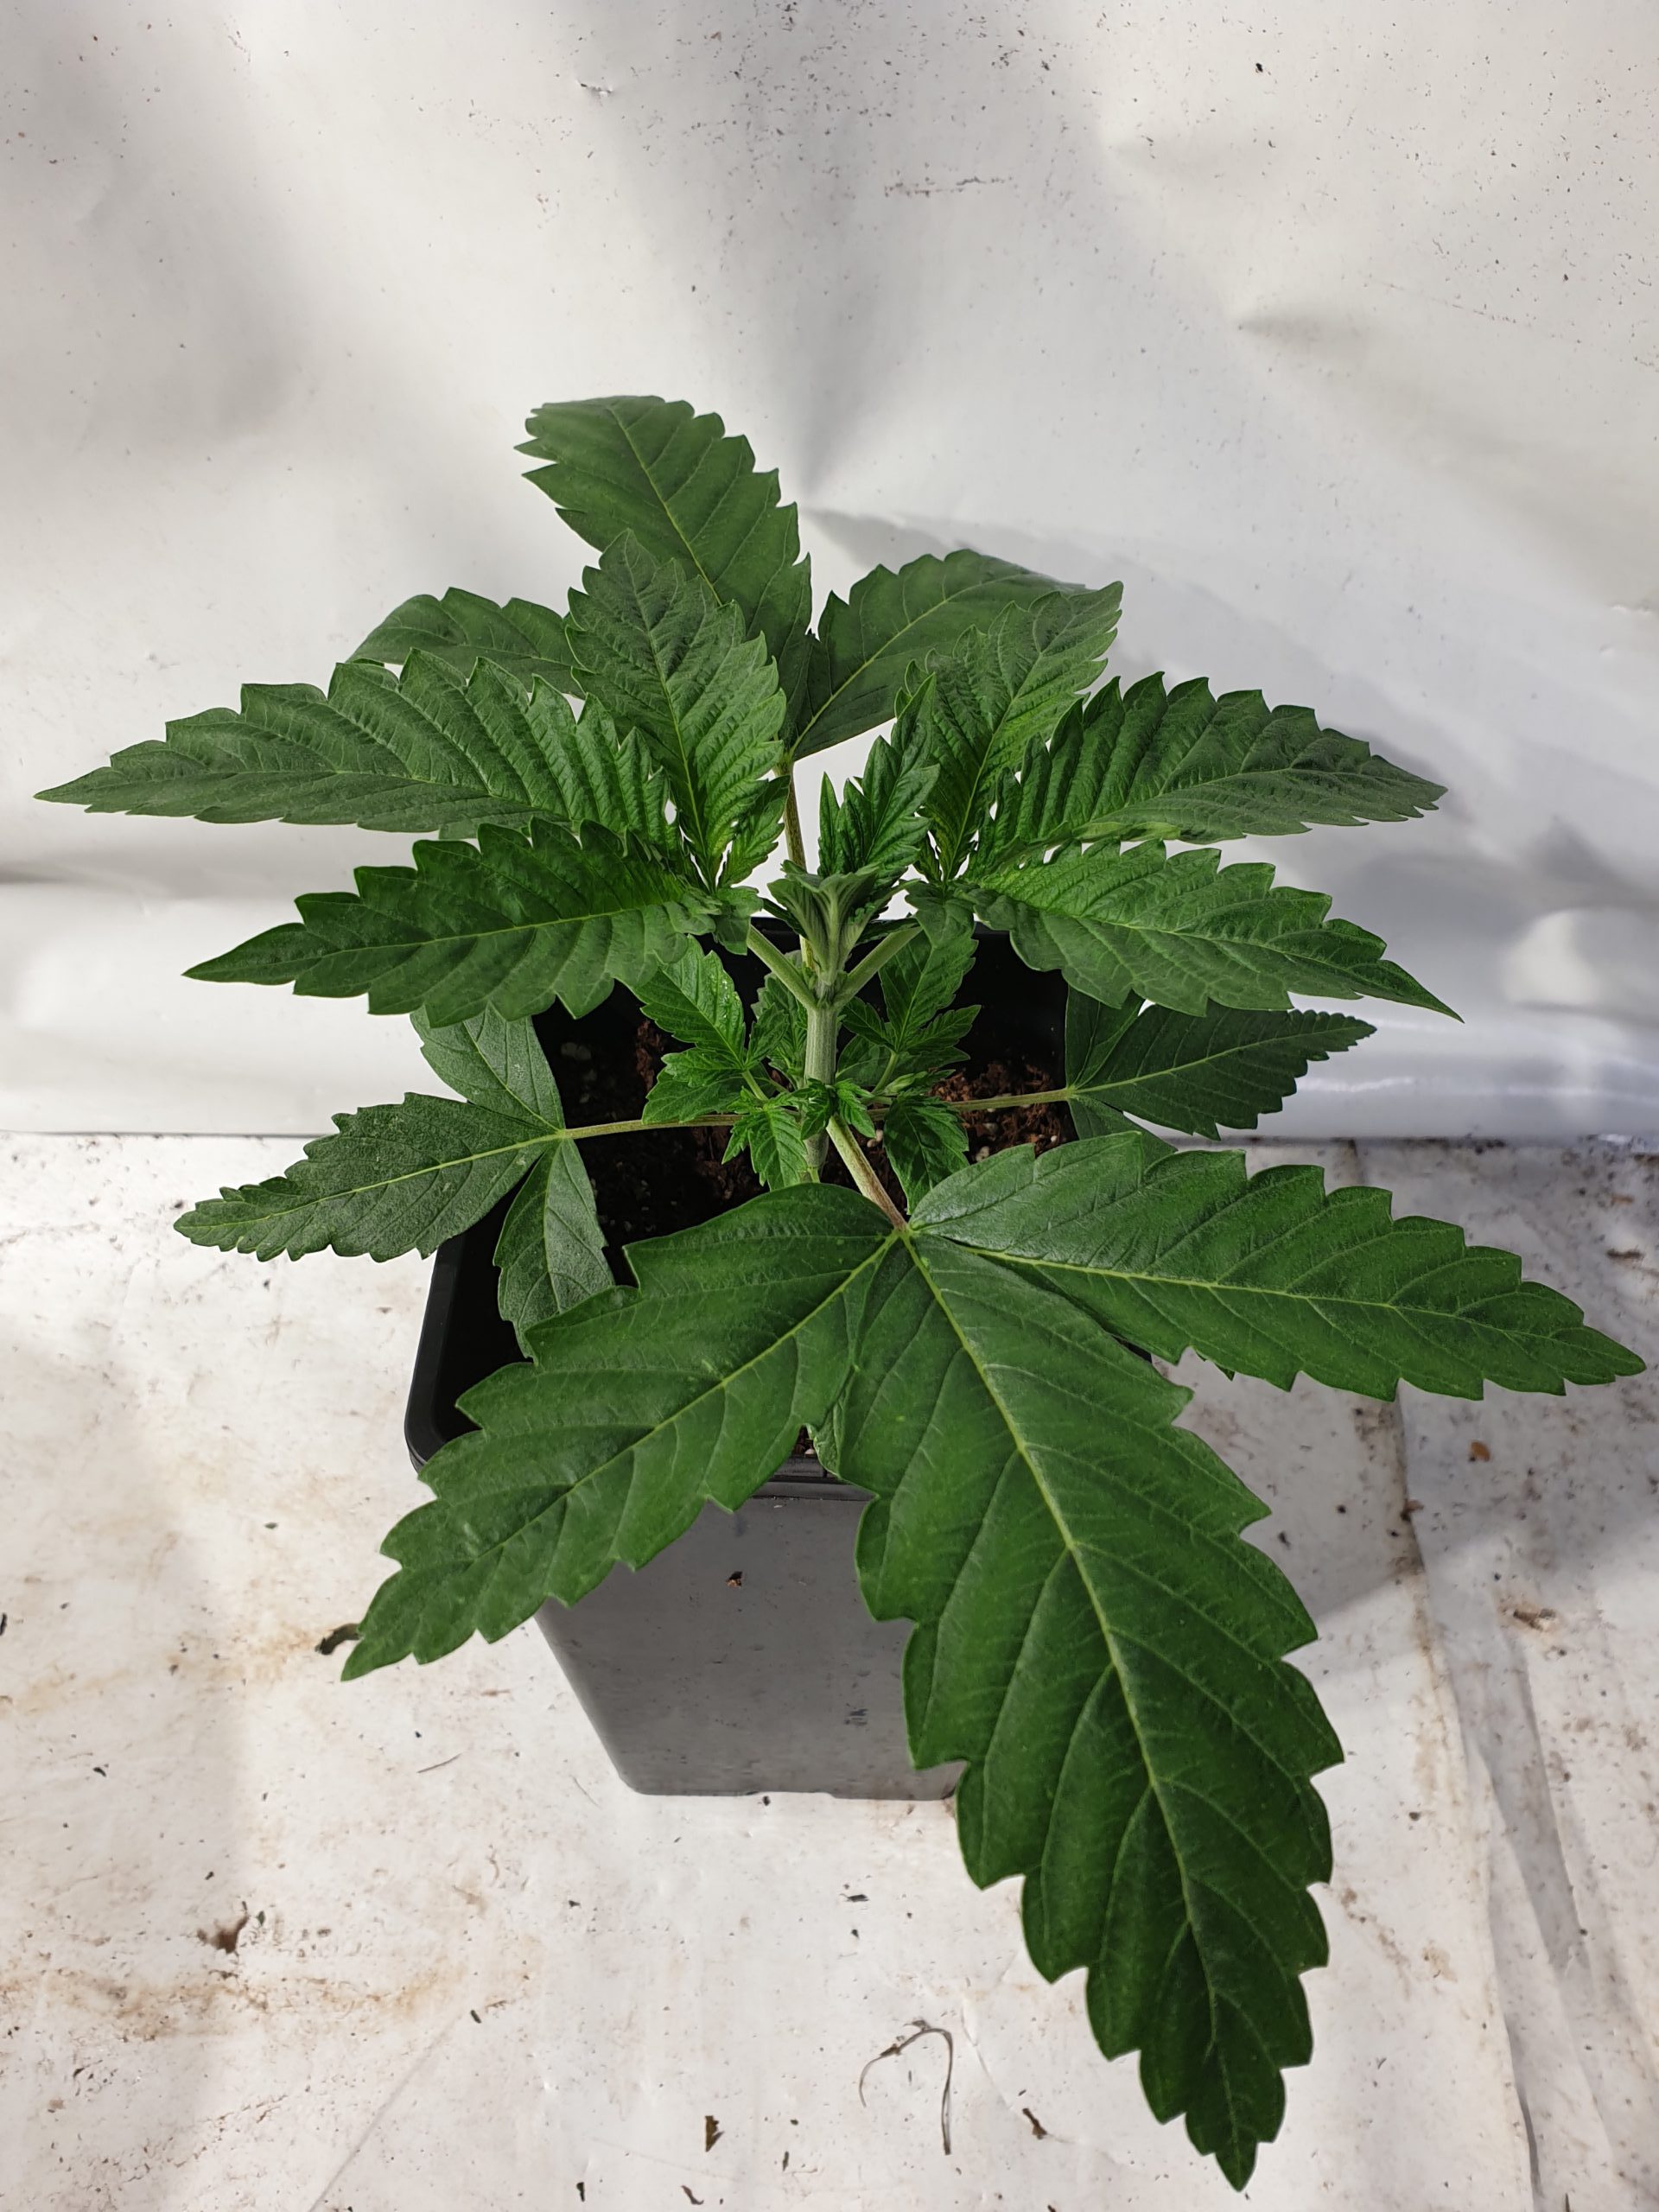 White choco first home grow cannabis